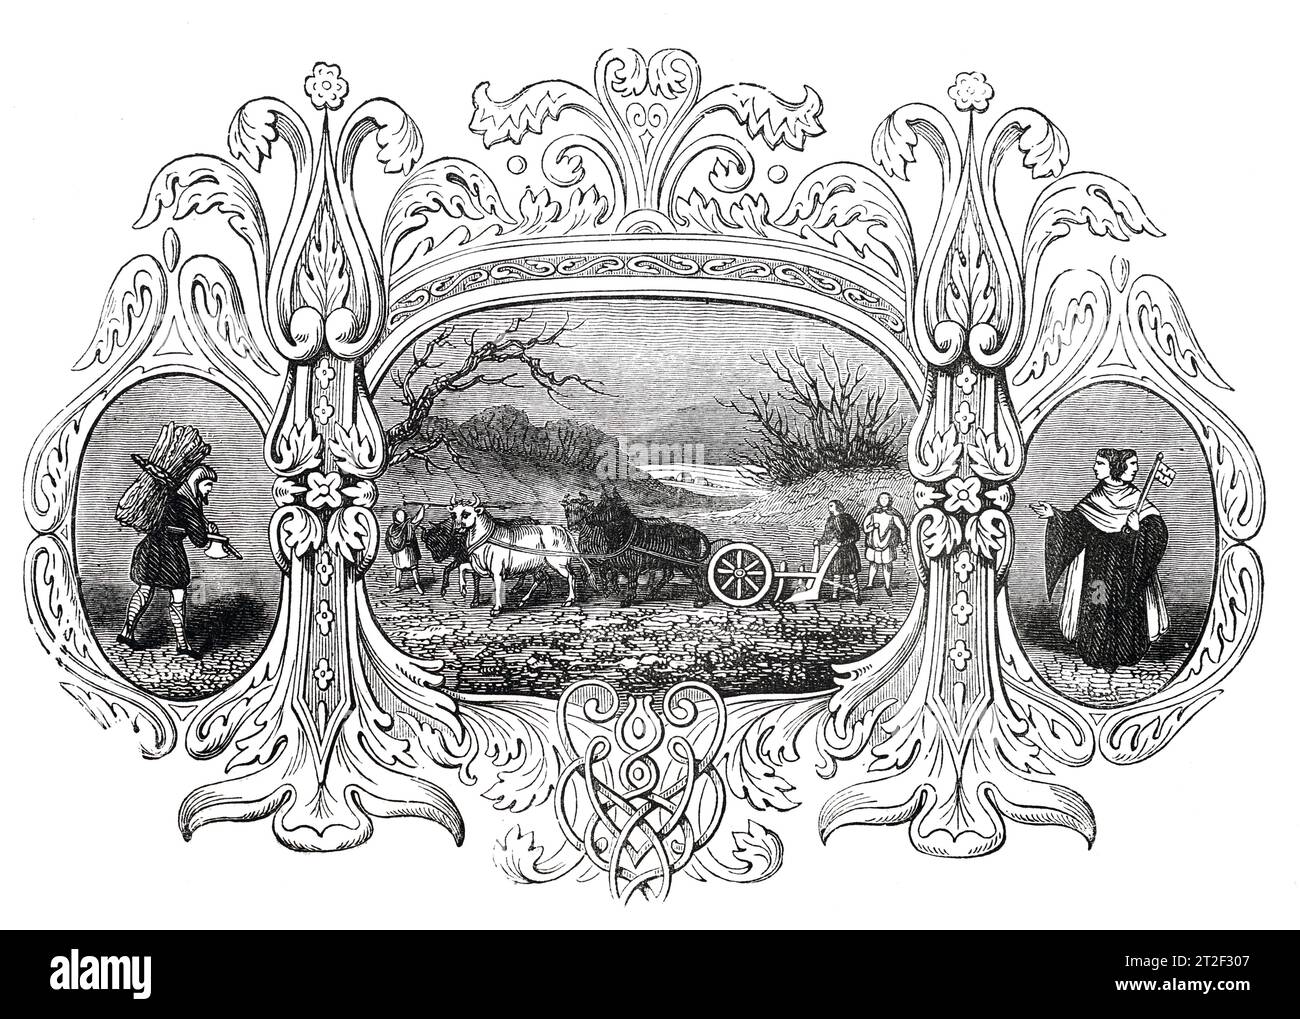 Emblemi sassoni del mese di gennaio. Black and White Illustration from the 'Old England' pubblicato da James Sangster nel 1860. Foto Stock